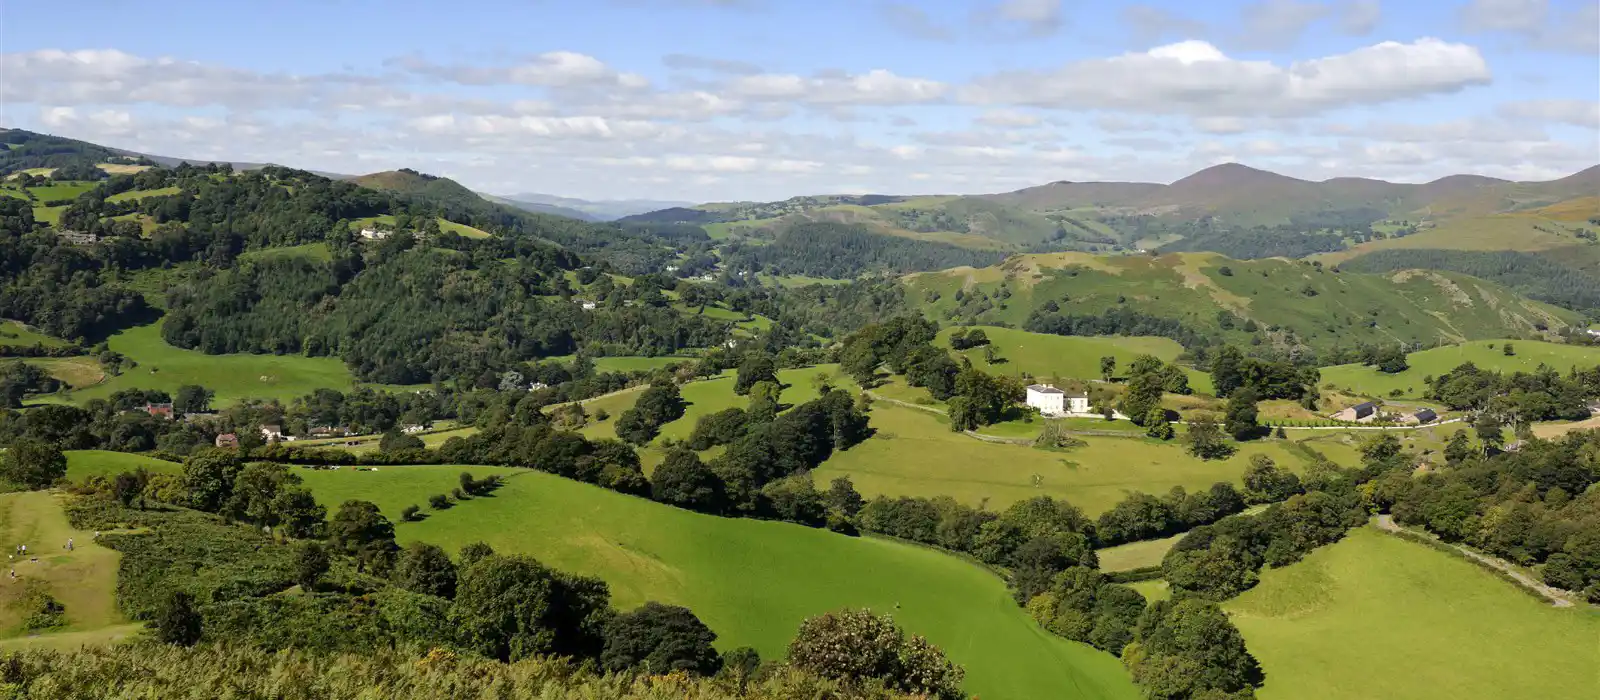 View from Castell Dinas Bran above Llangollen, Denbighshire, Wales